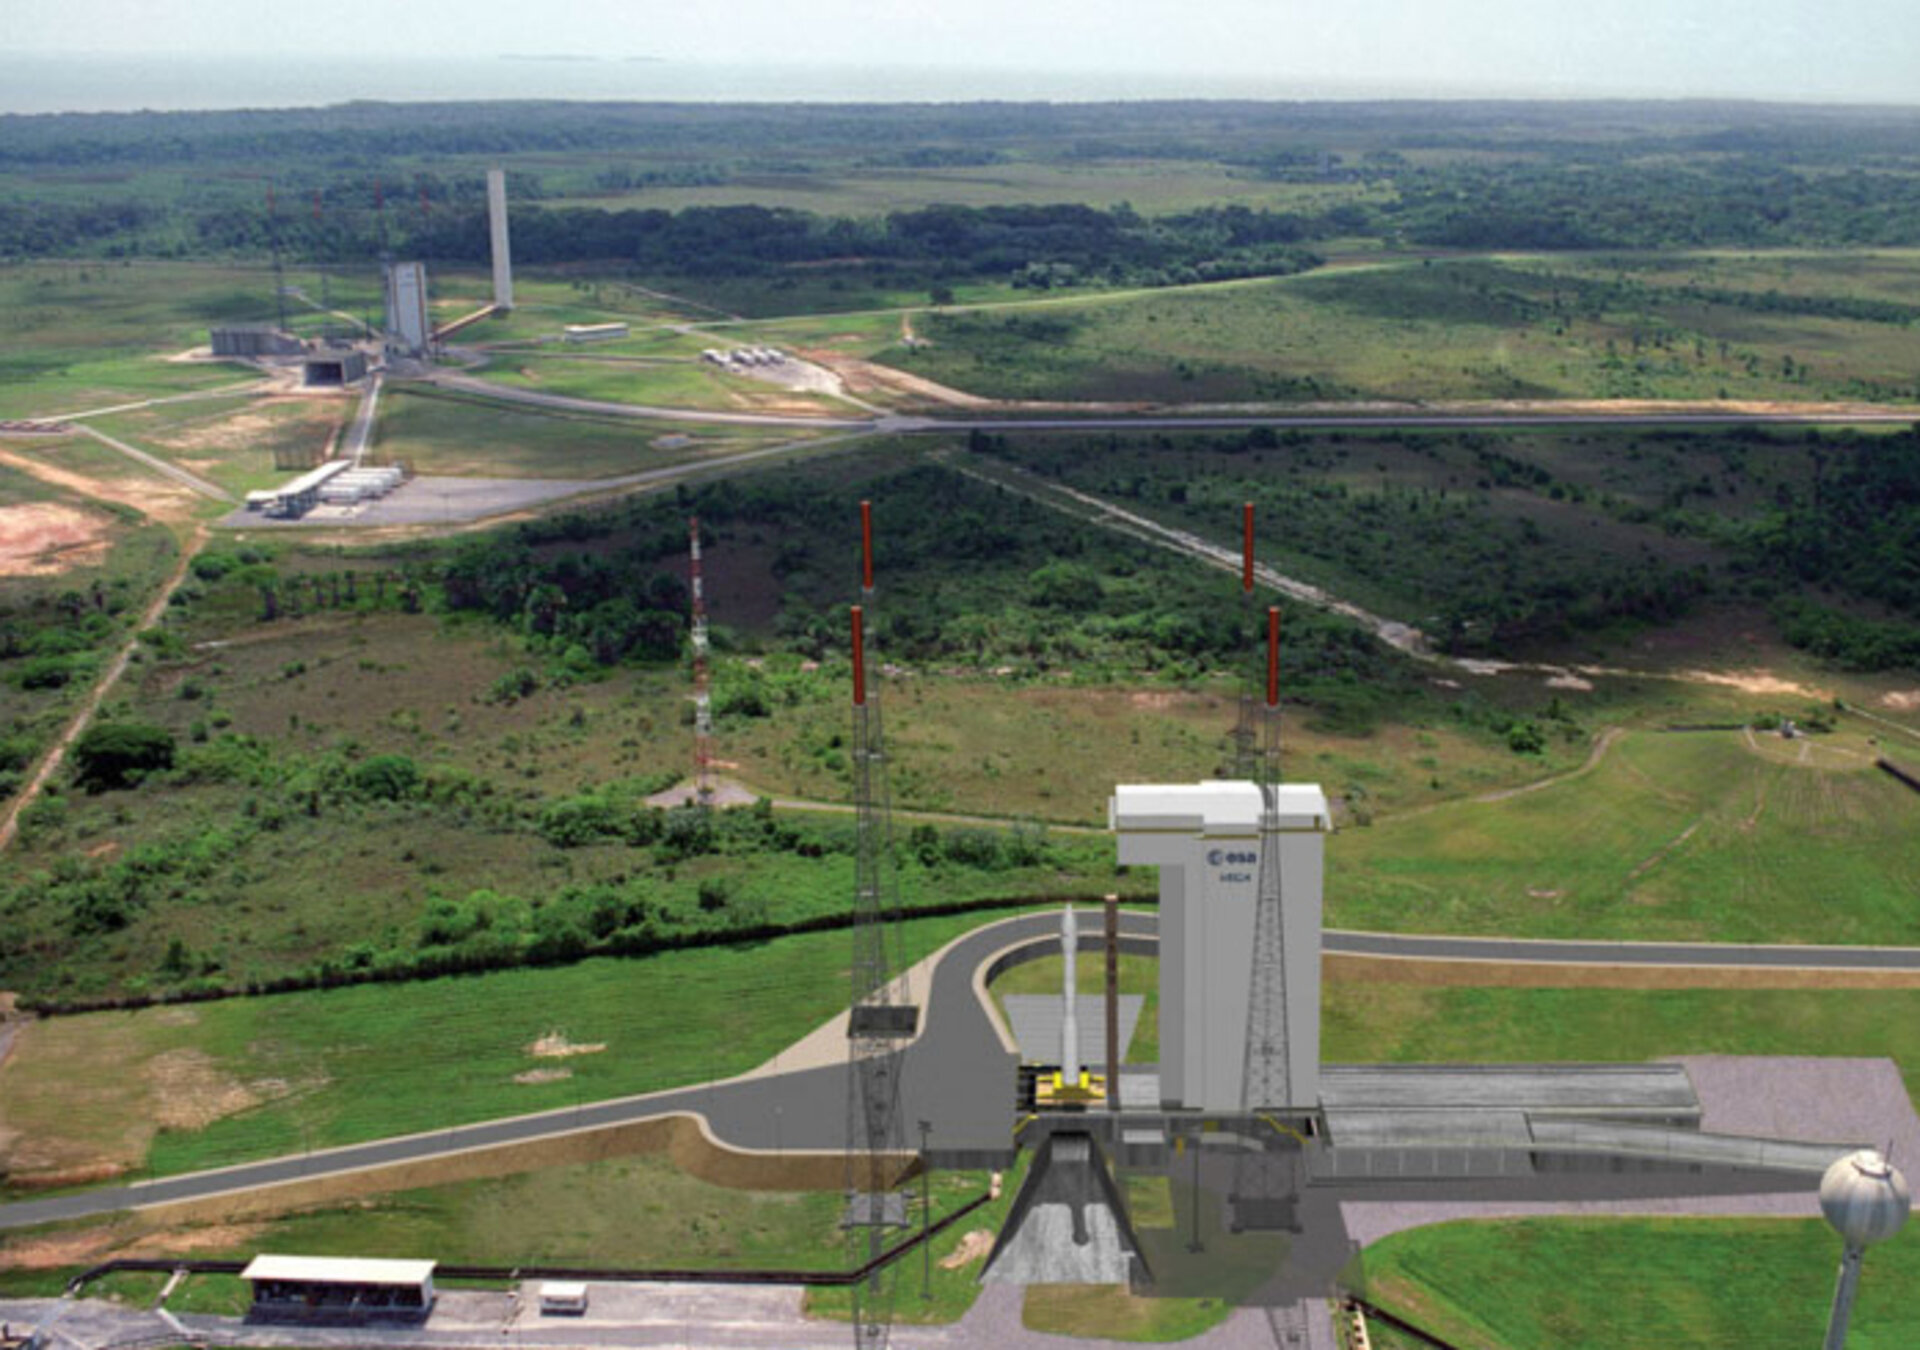 Aux côtés d’ELA 3 (Ariane-5), le SLV (Site Lancement Vega) prend forme